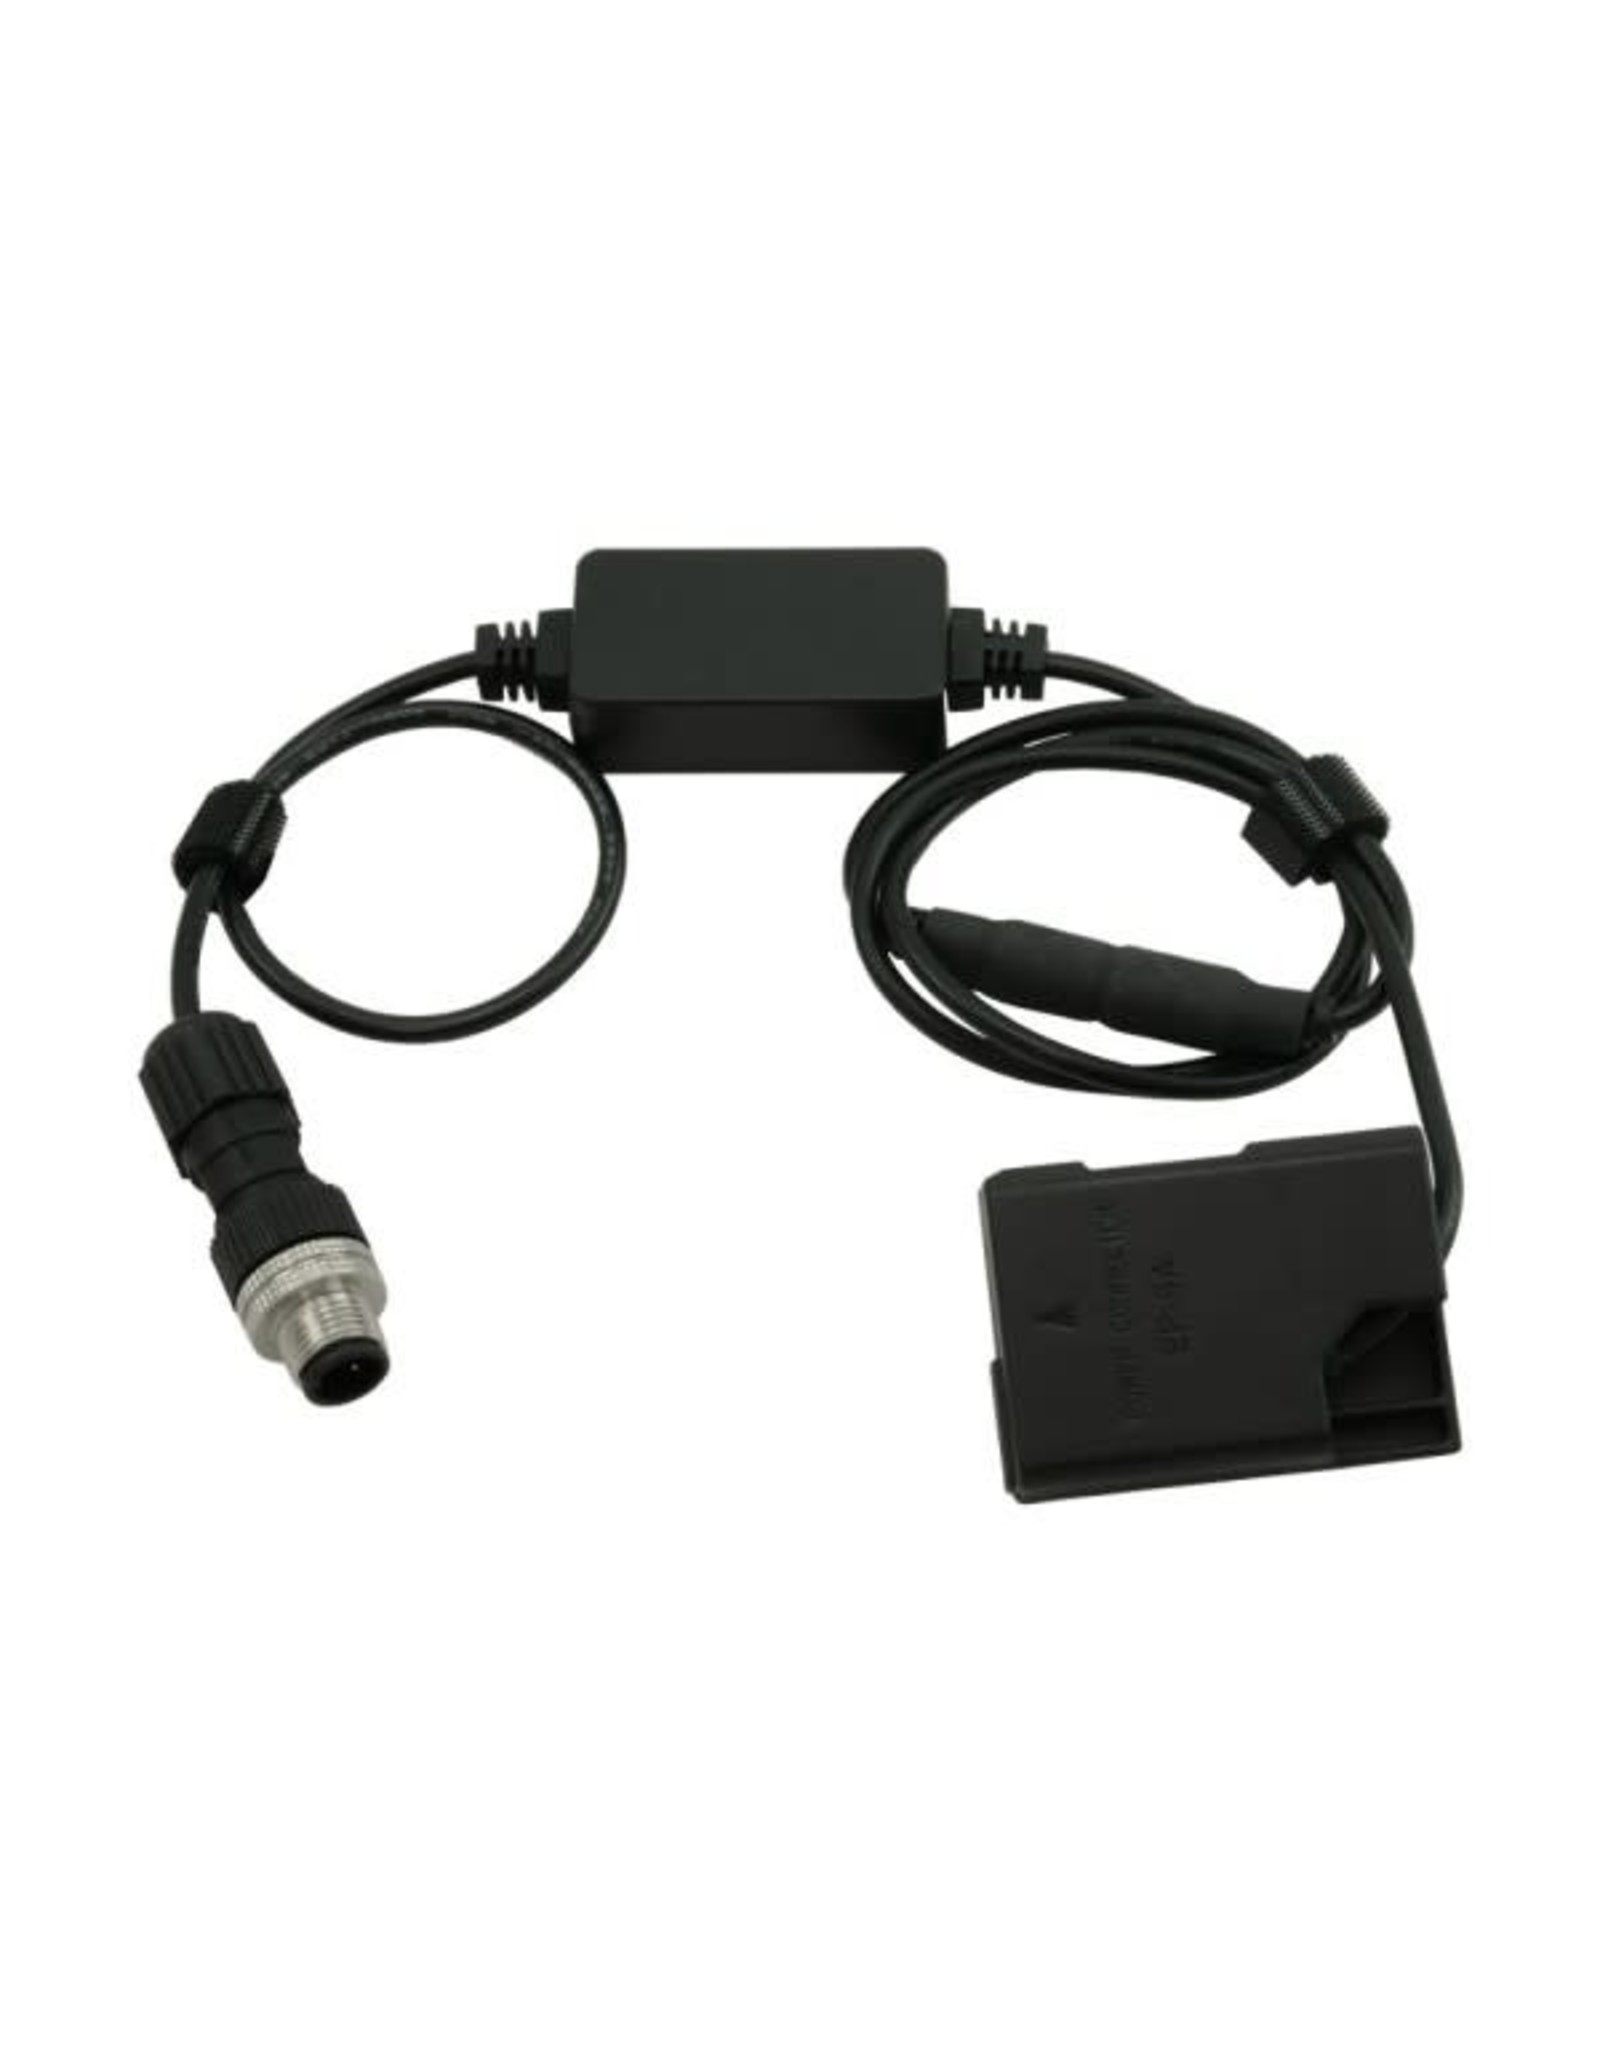 PrimaLuceLab PrimaLuceLab Eagle-compatible power cable for Nikon D3100, D3200, D3300, D5100, D5200, D5300, D5500 3A